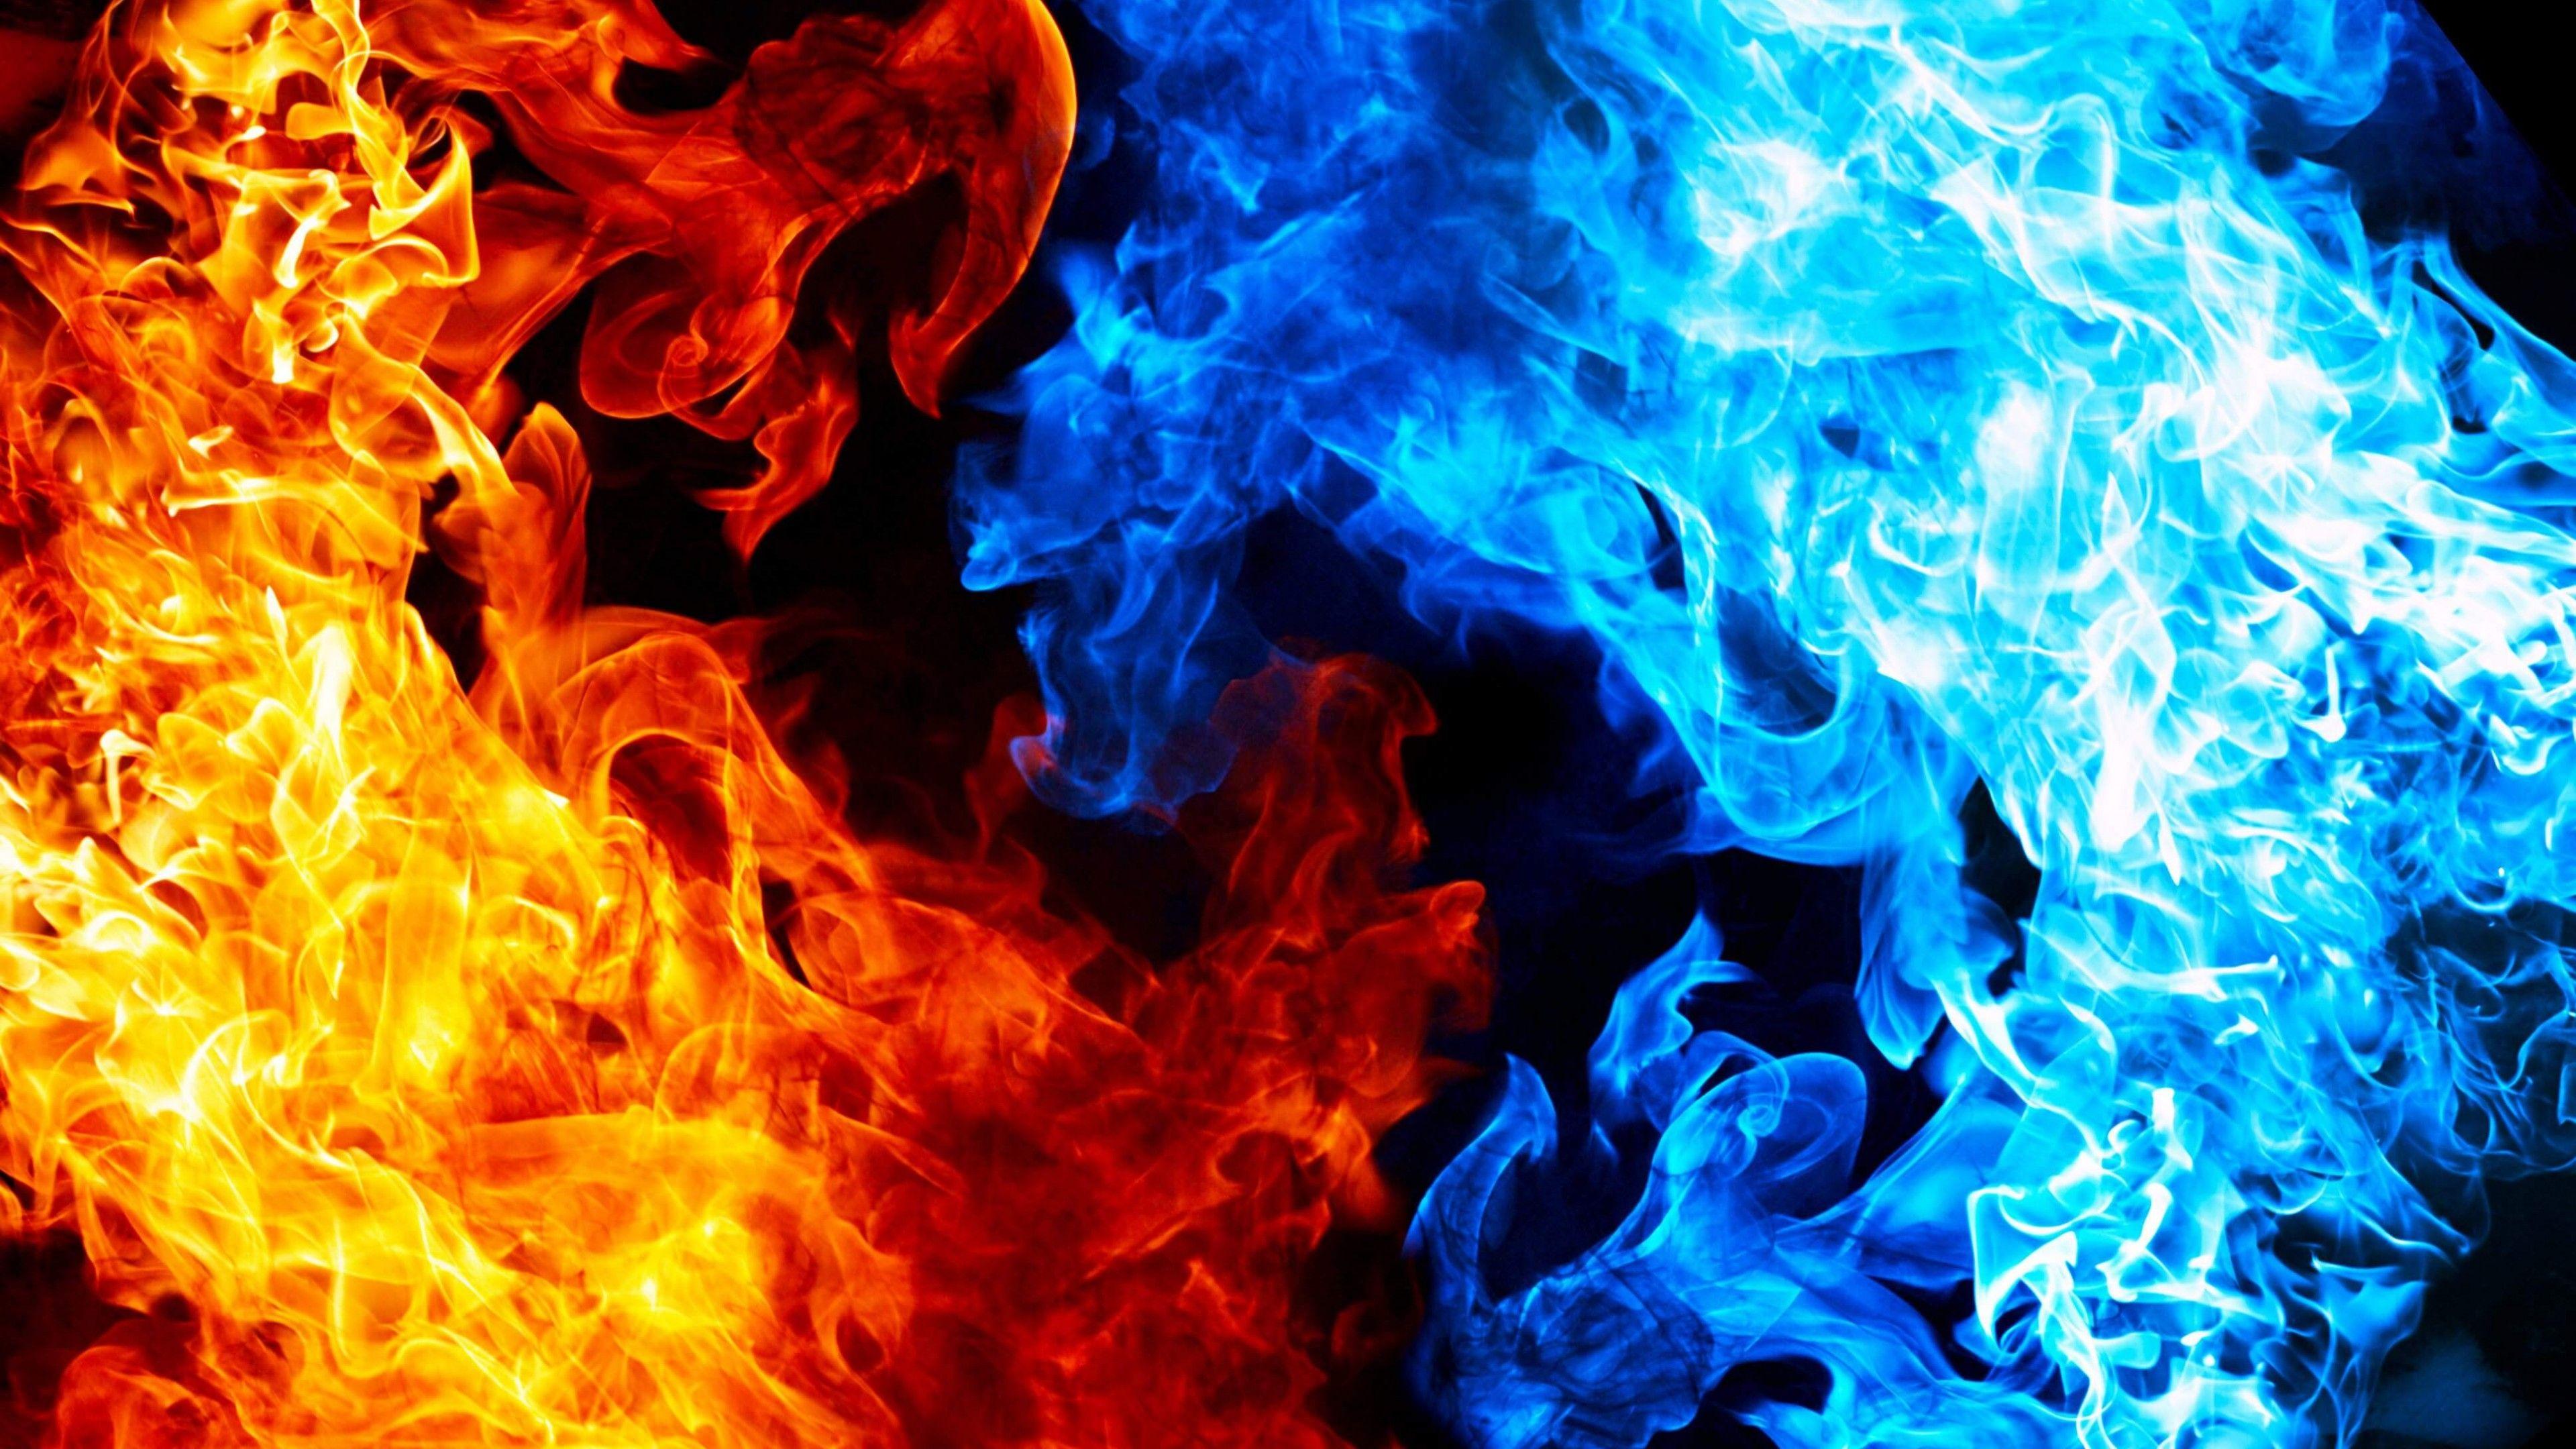 Lửa xanh (Blue fire): Hãy chiêm ngưỡng vẻ đẹp kỳ diệu của lửa xanh! Những ngọn lửa màu xanh ngọc bích này sẽ khiến bạn như lạc vào một thế giới hoang dã, kỳ ảo và đầy bất ngờ. Cùng đắm chìm trong màu sắc và sức hút của lửa xanh để giải tỏa căng thẳng và tìm lại sự hứng khởi.